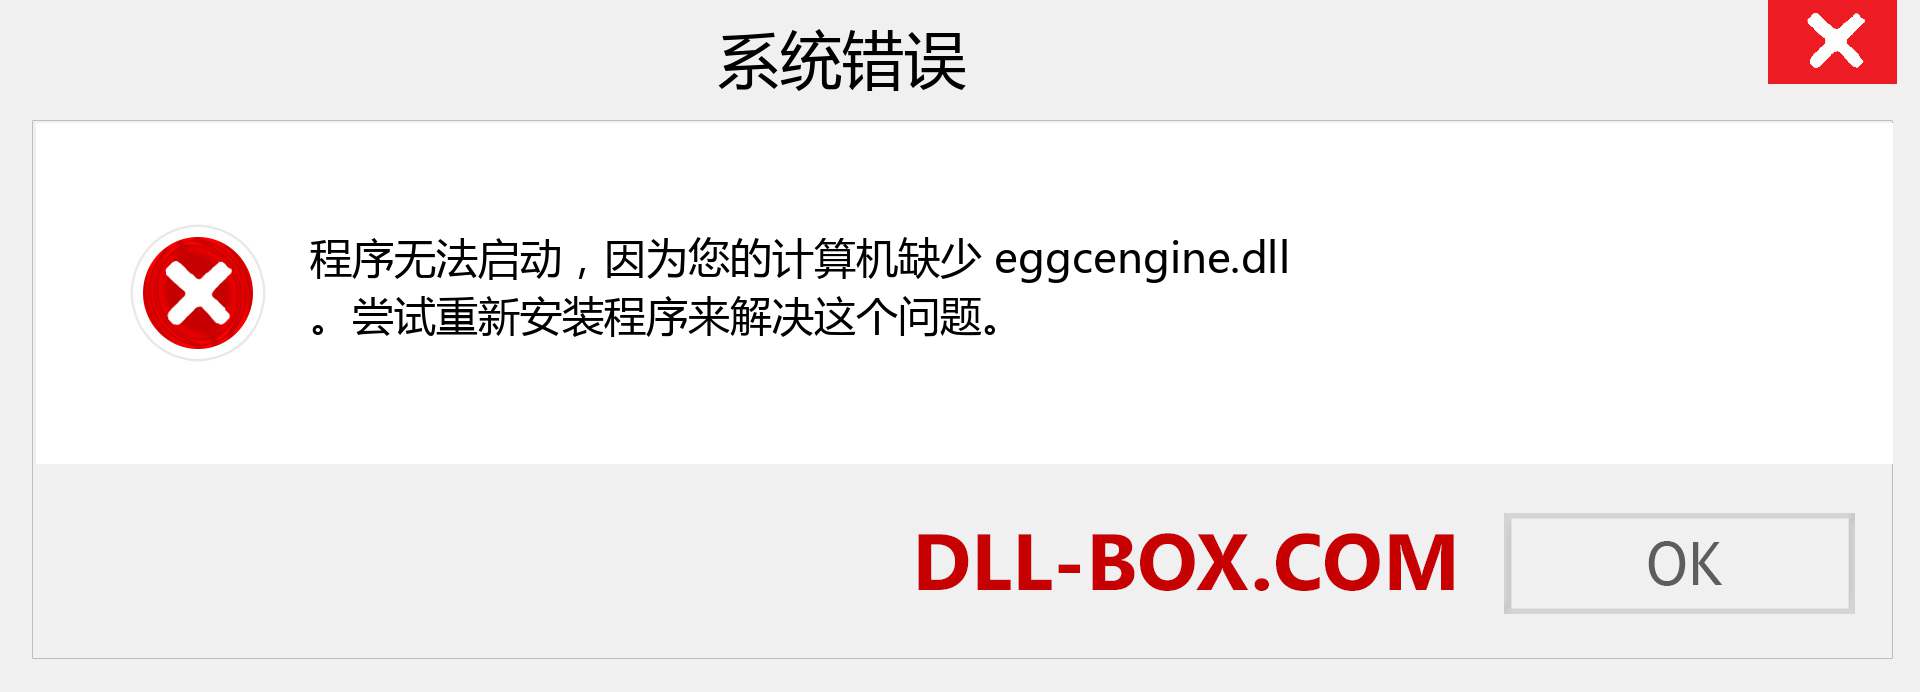 eggcengine.dll 文件丢失？。 适用于 Windows 7、8、10 的下载 - 修复 Windows、照片、图像上的 eggcengine dll 丢失错误